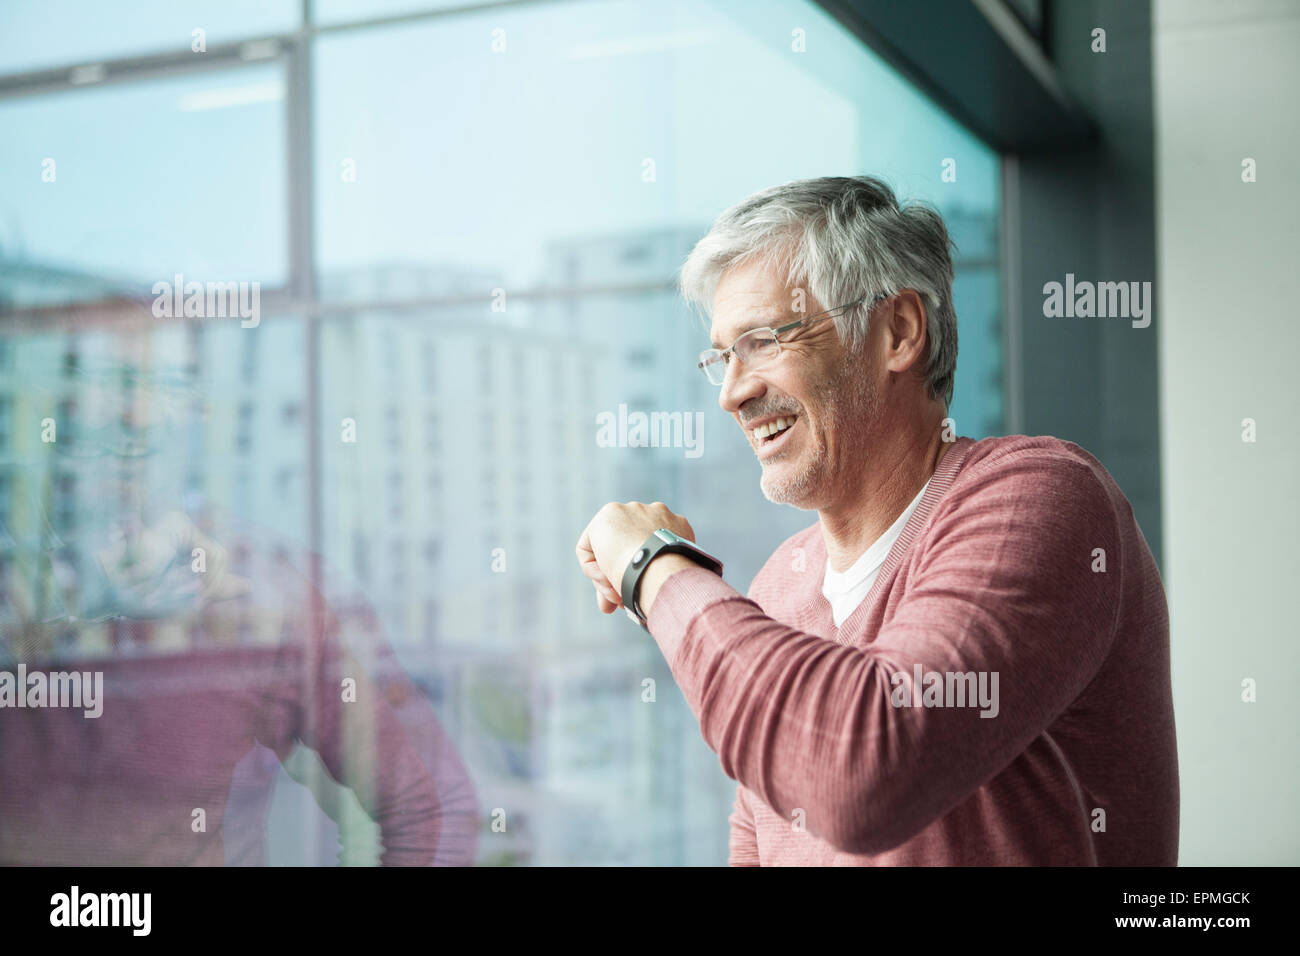 Lächelnder Mann mit Smartwatch Blick durch Fenster Stockfoto